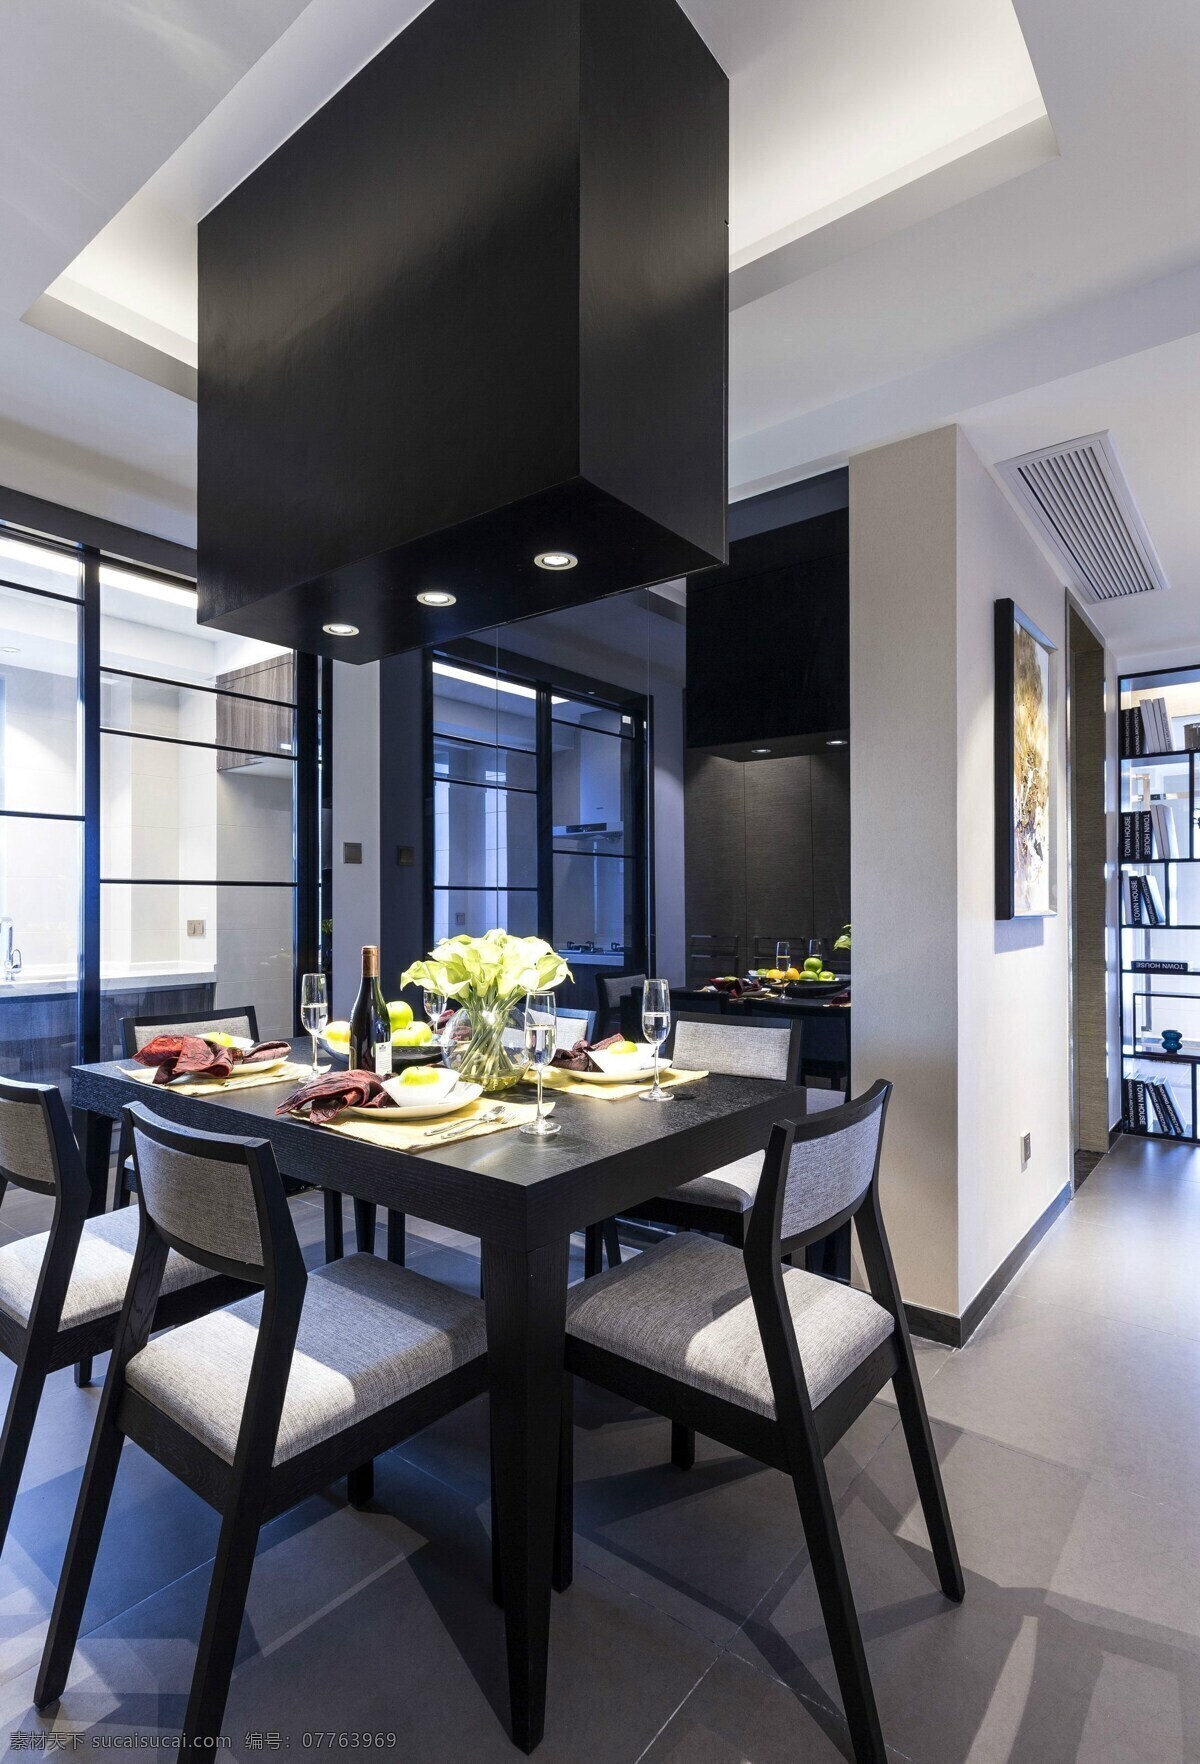 室内 餐厅 现代 时尚 创意 装修 效果图 黑色餐桌椅 创意箱体吊灯 精美餐具 玻璃滑门